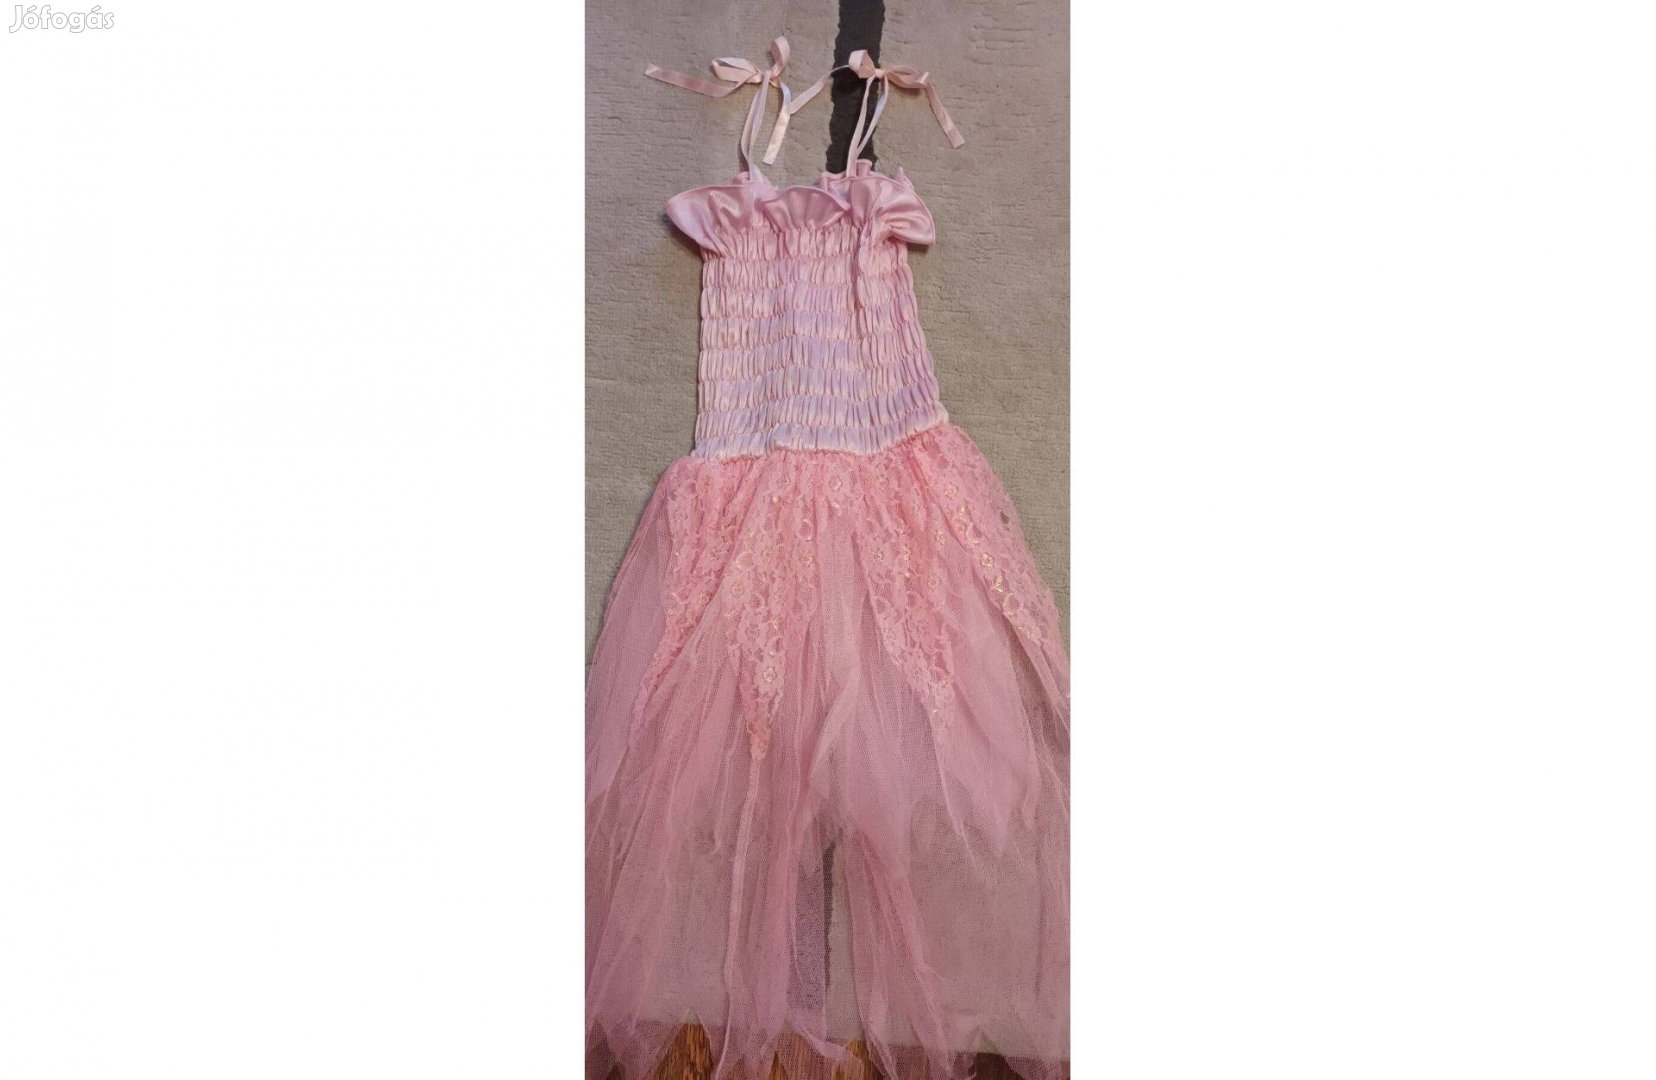 Kislány balerina ruha 6-8 év alig használt, rózsaszín 2500 Ft